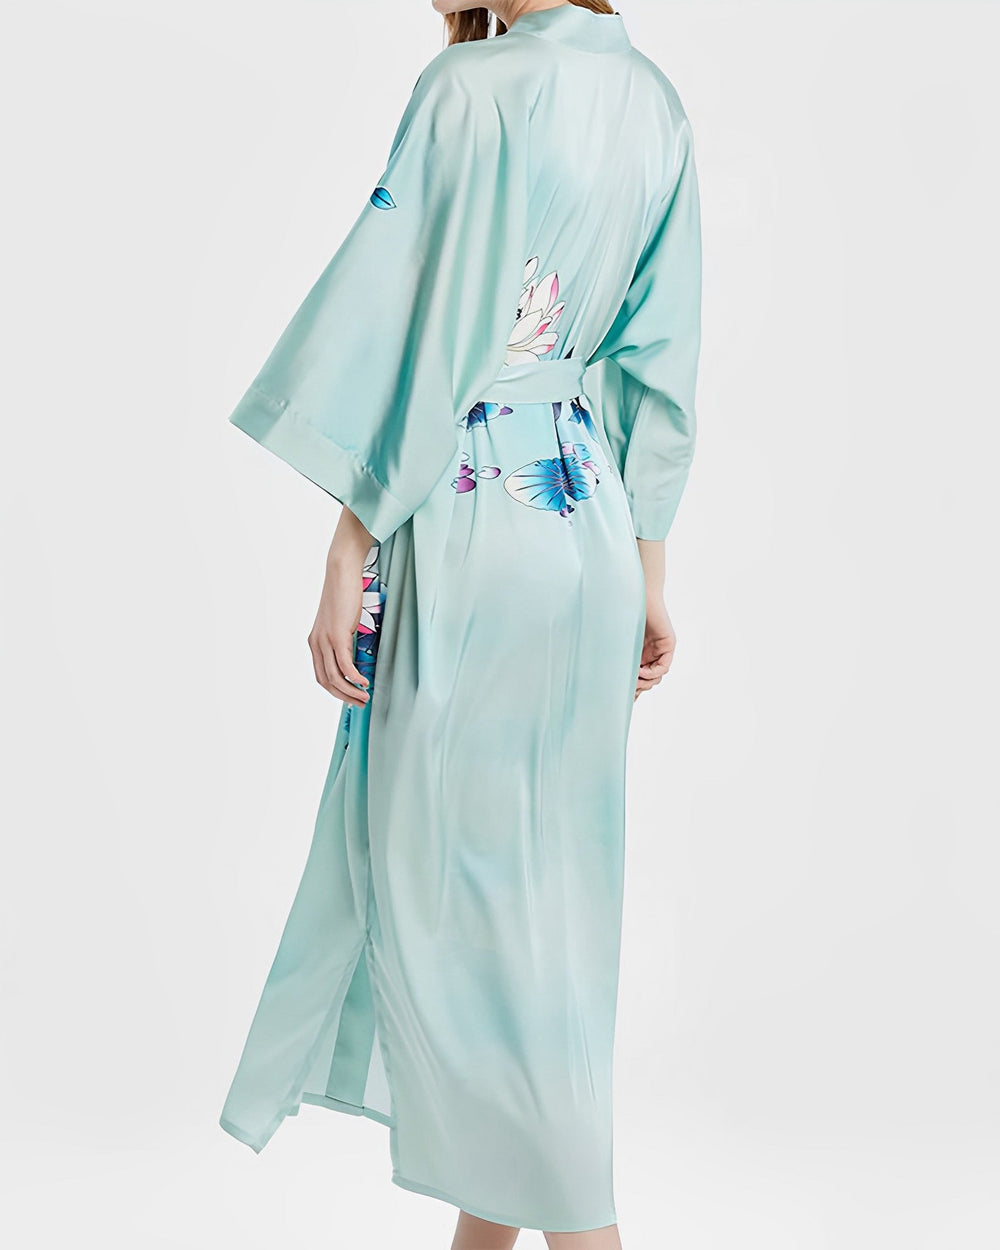 Silk Kimono Long Paragraph Pajamas Lotus Style - SusanSilk